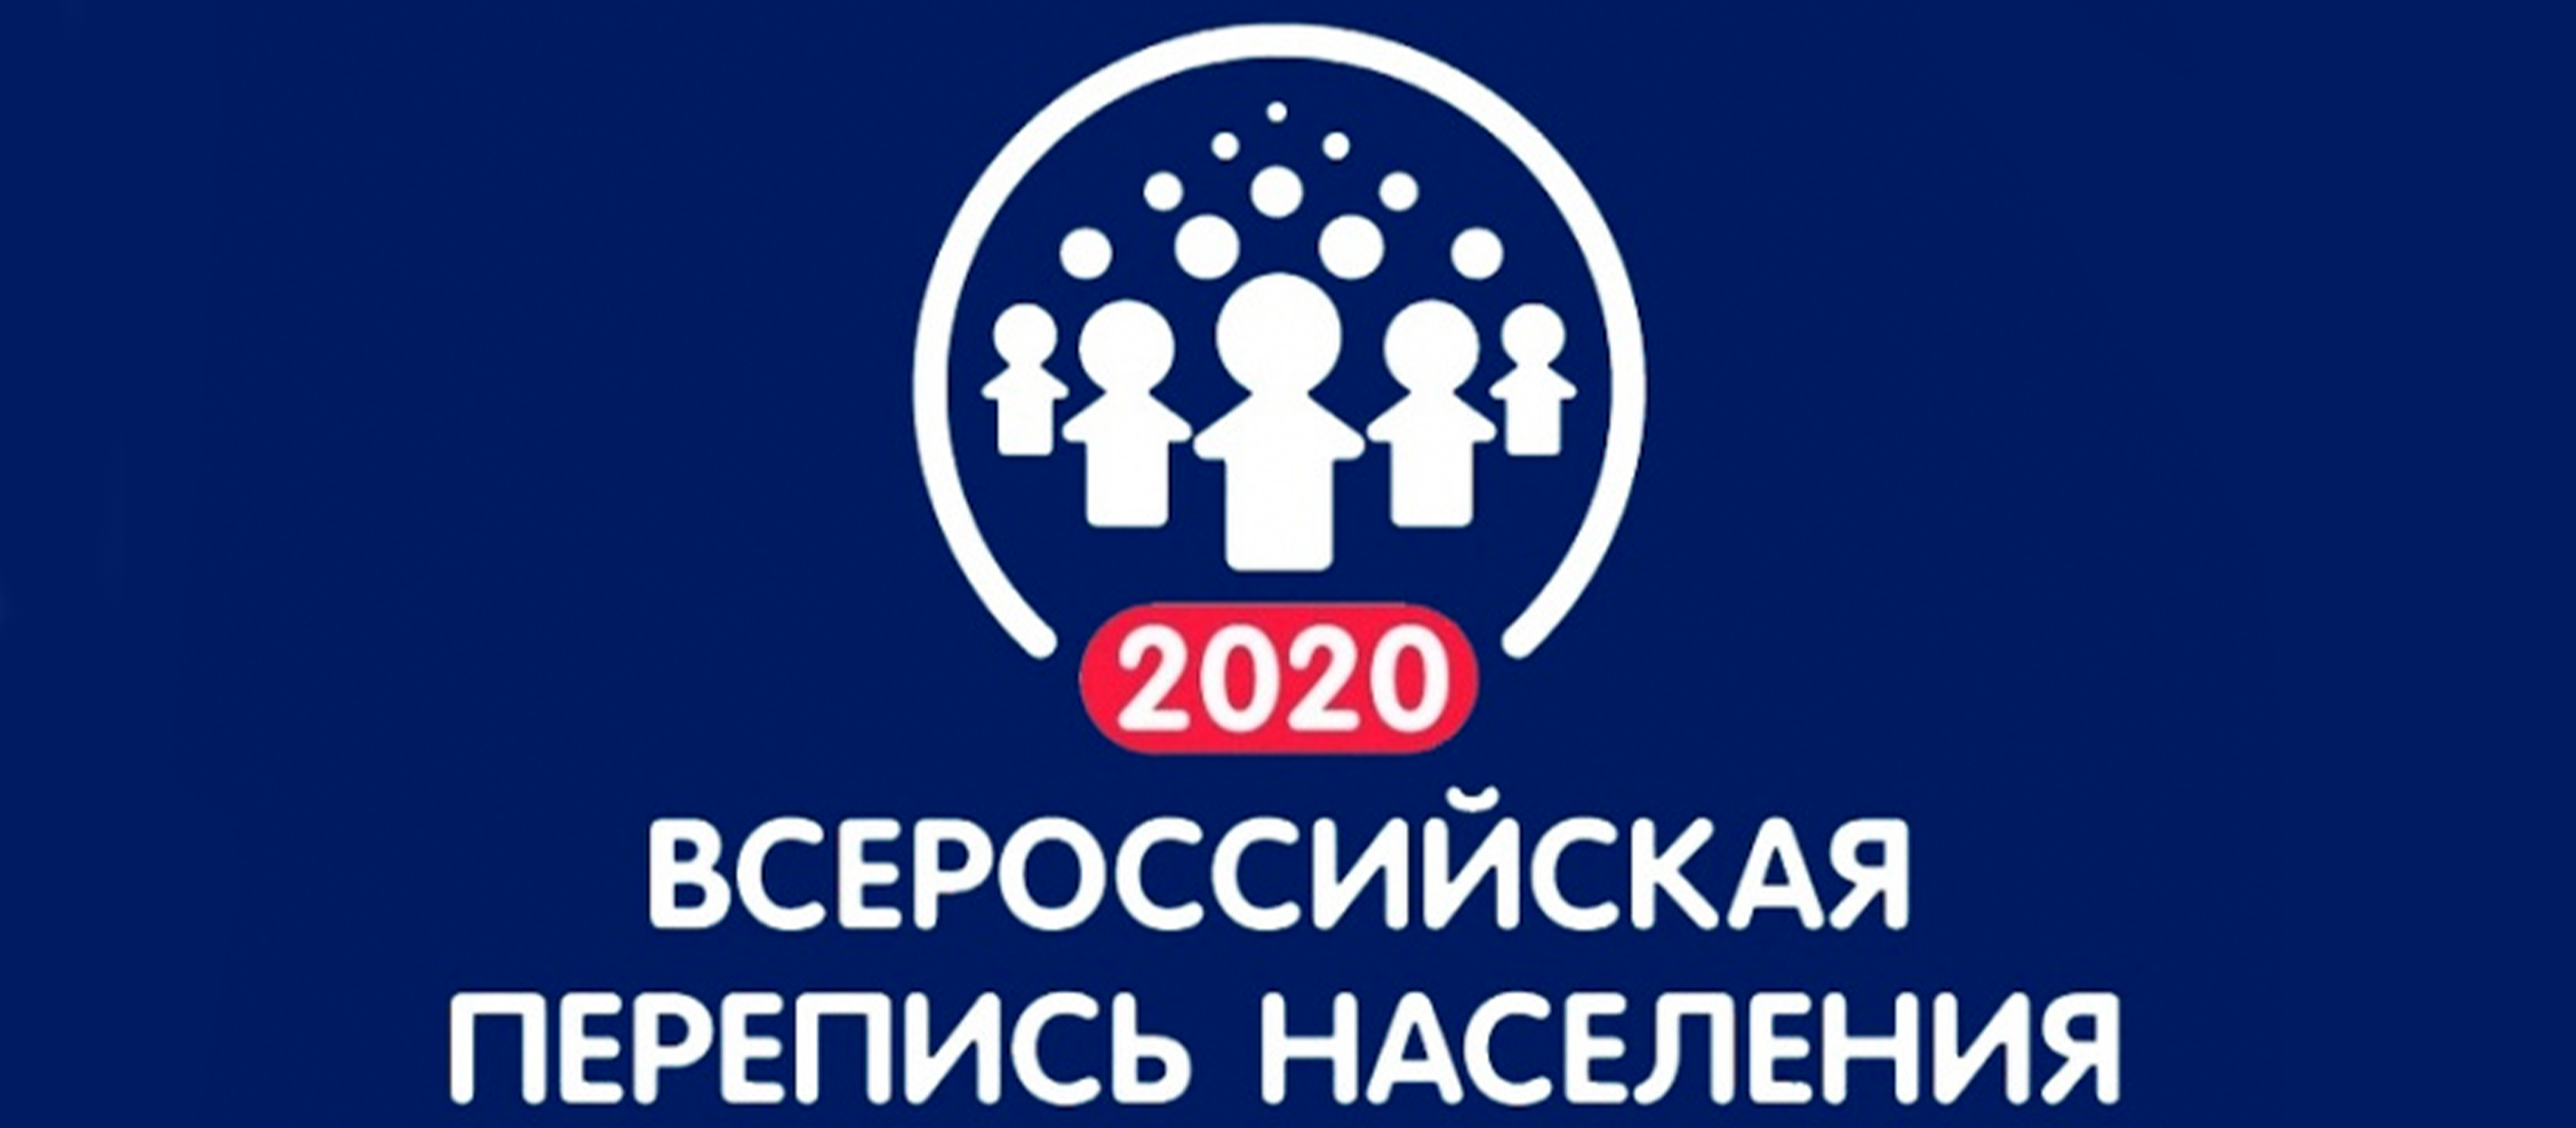 О ПЕРЕПИСИ НАСЕЛЕНИЯ 2020